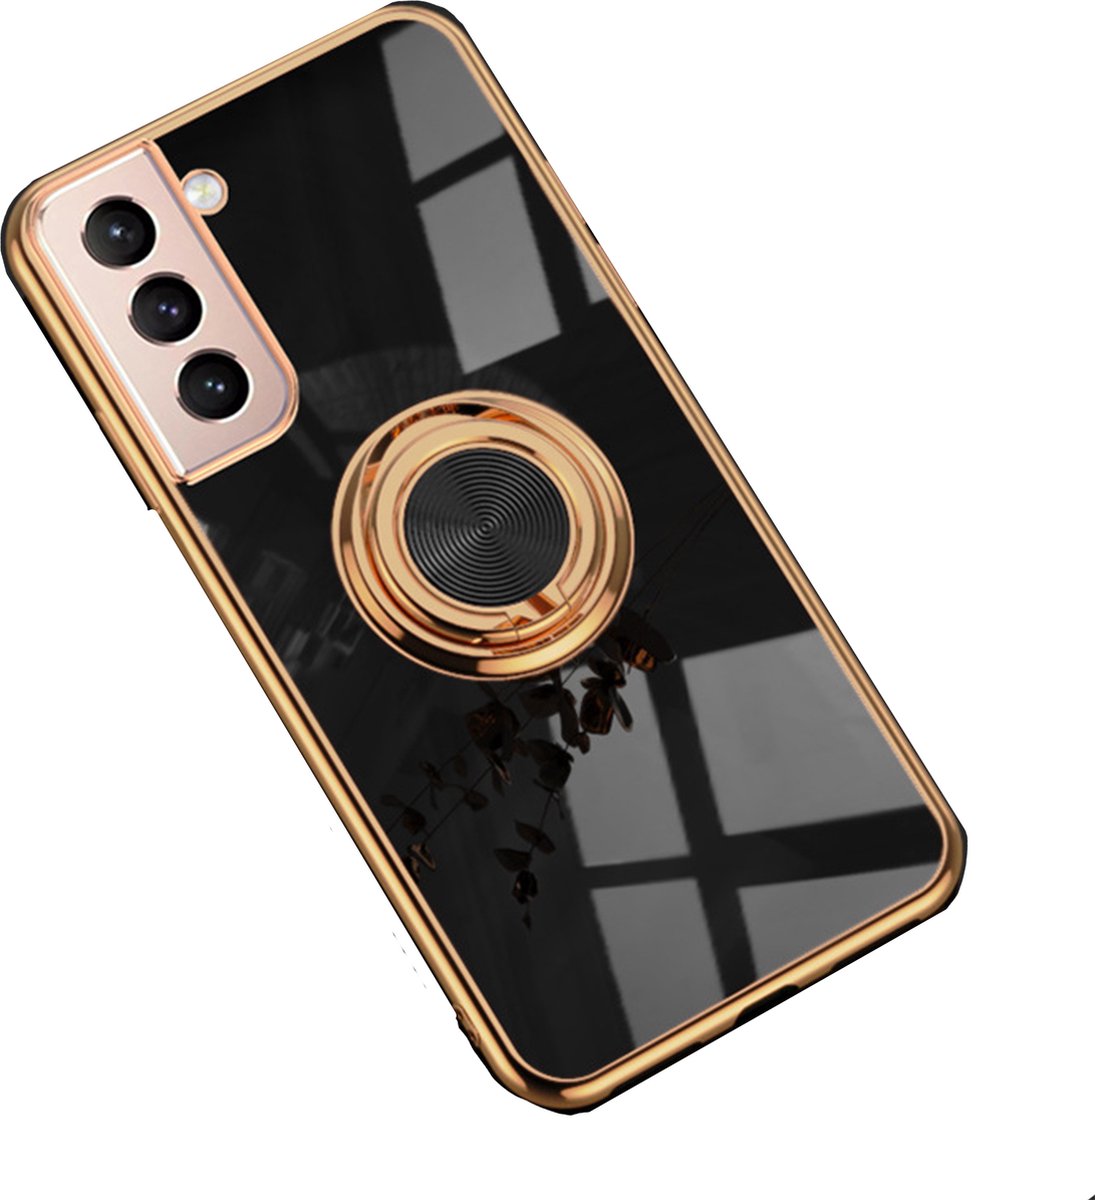 Samsung S21 hoesje met ring - Kickstand - Samsung - Goud detail - Handig - Hoesje met ring - 5 verschillende kleuren - zalm roze - Grijs/blauw - Donker groen - Zwart - Paars